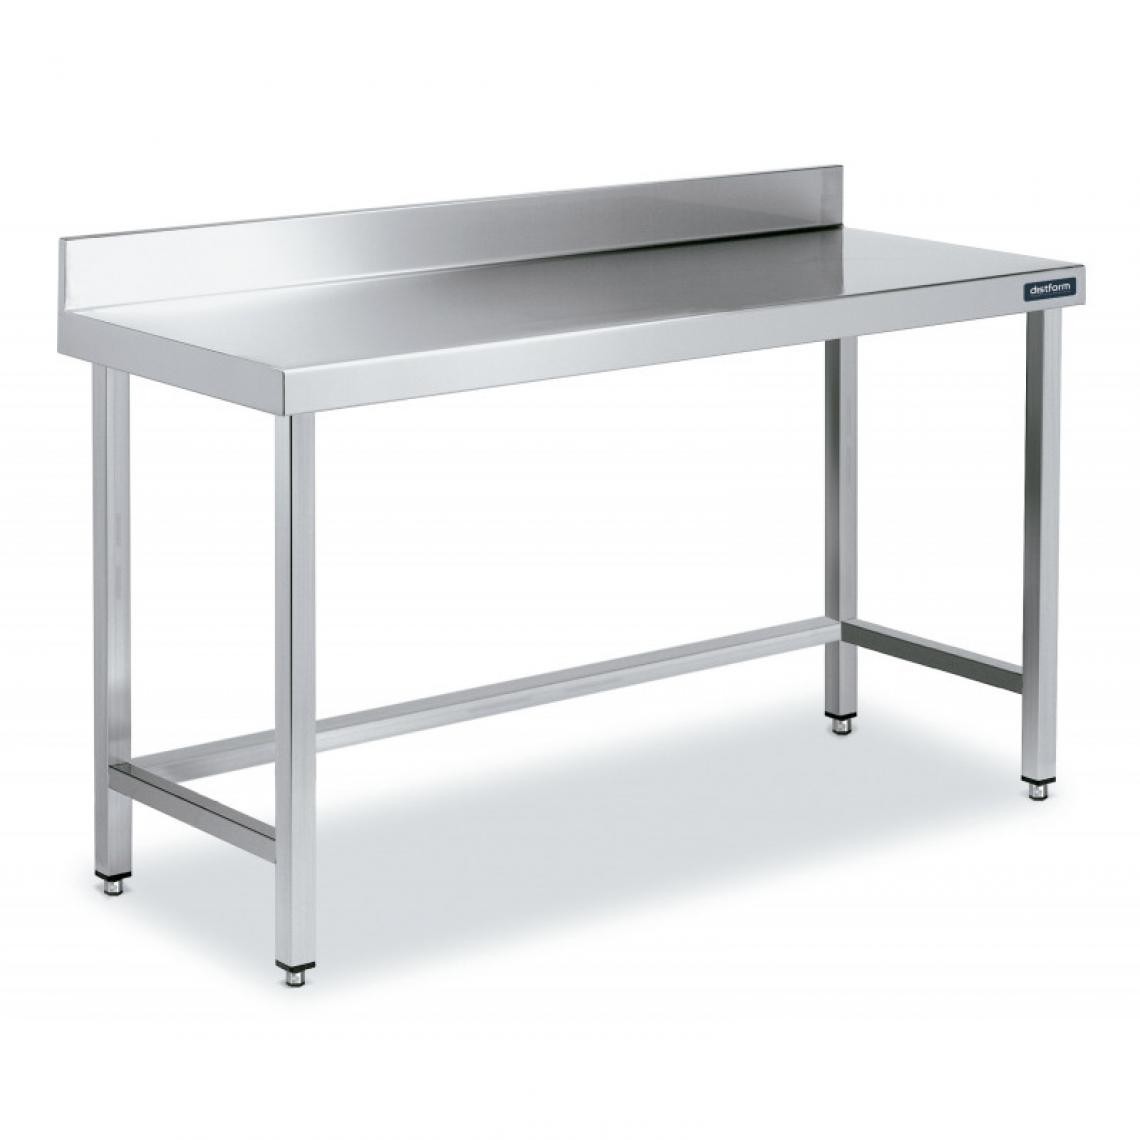 DISTFORM - Table Adossée en Inox avec Renforts Profondeur 700 mm - Distform - Acier inoxydable2000x700 - Tables à manger